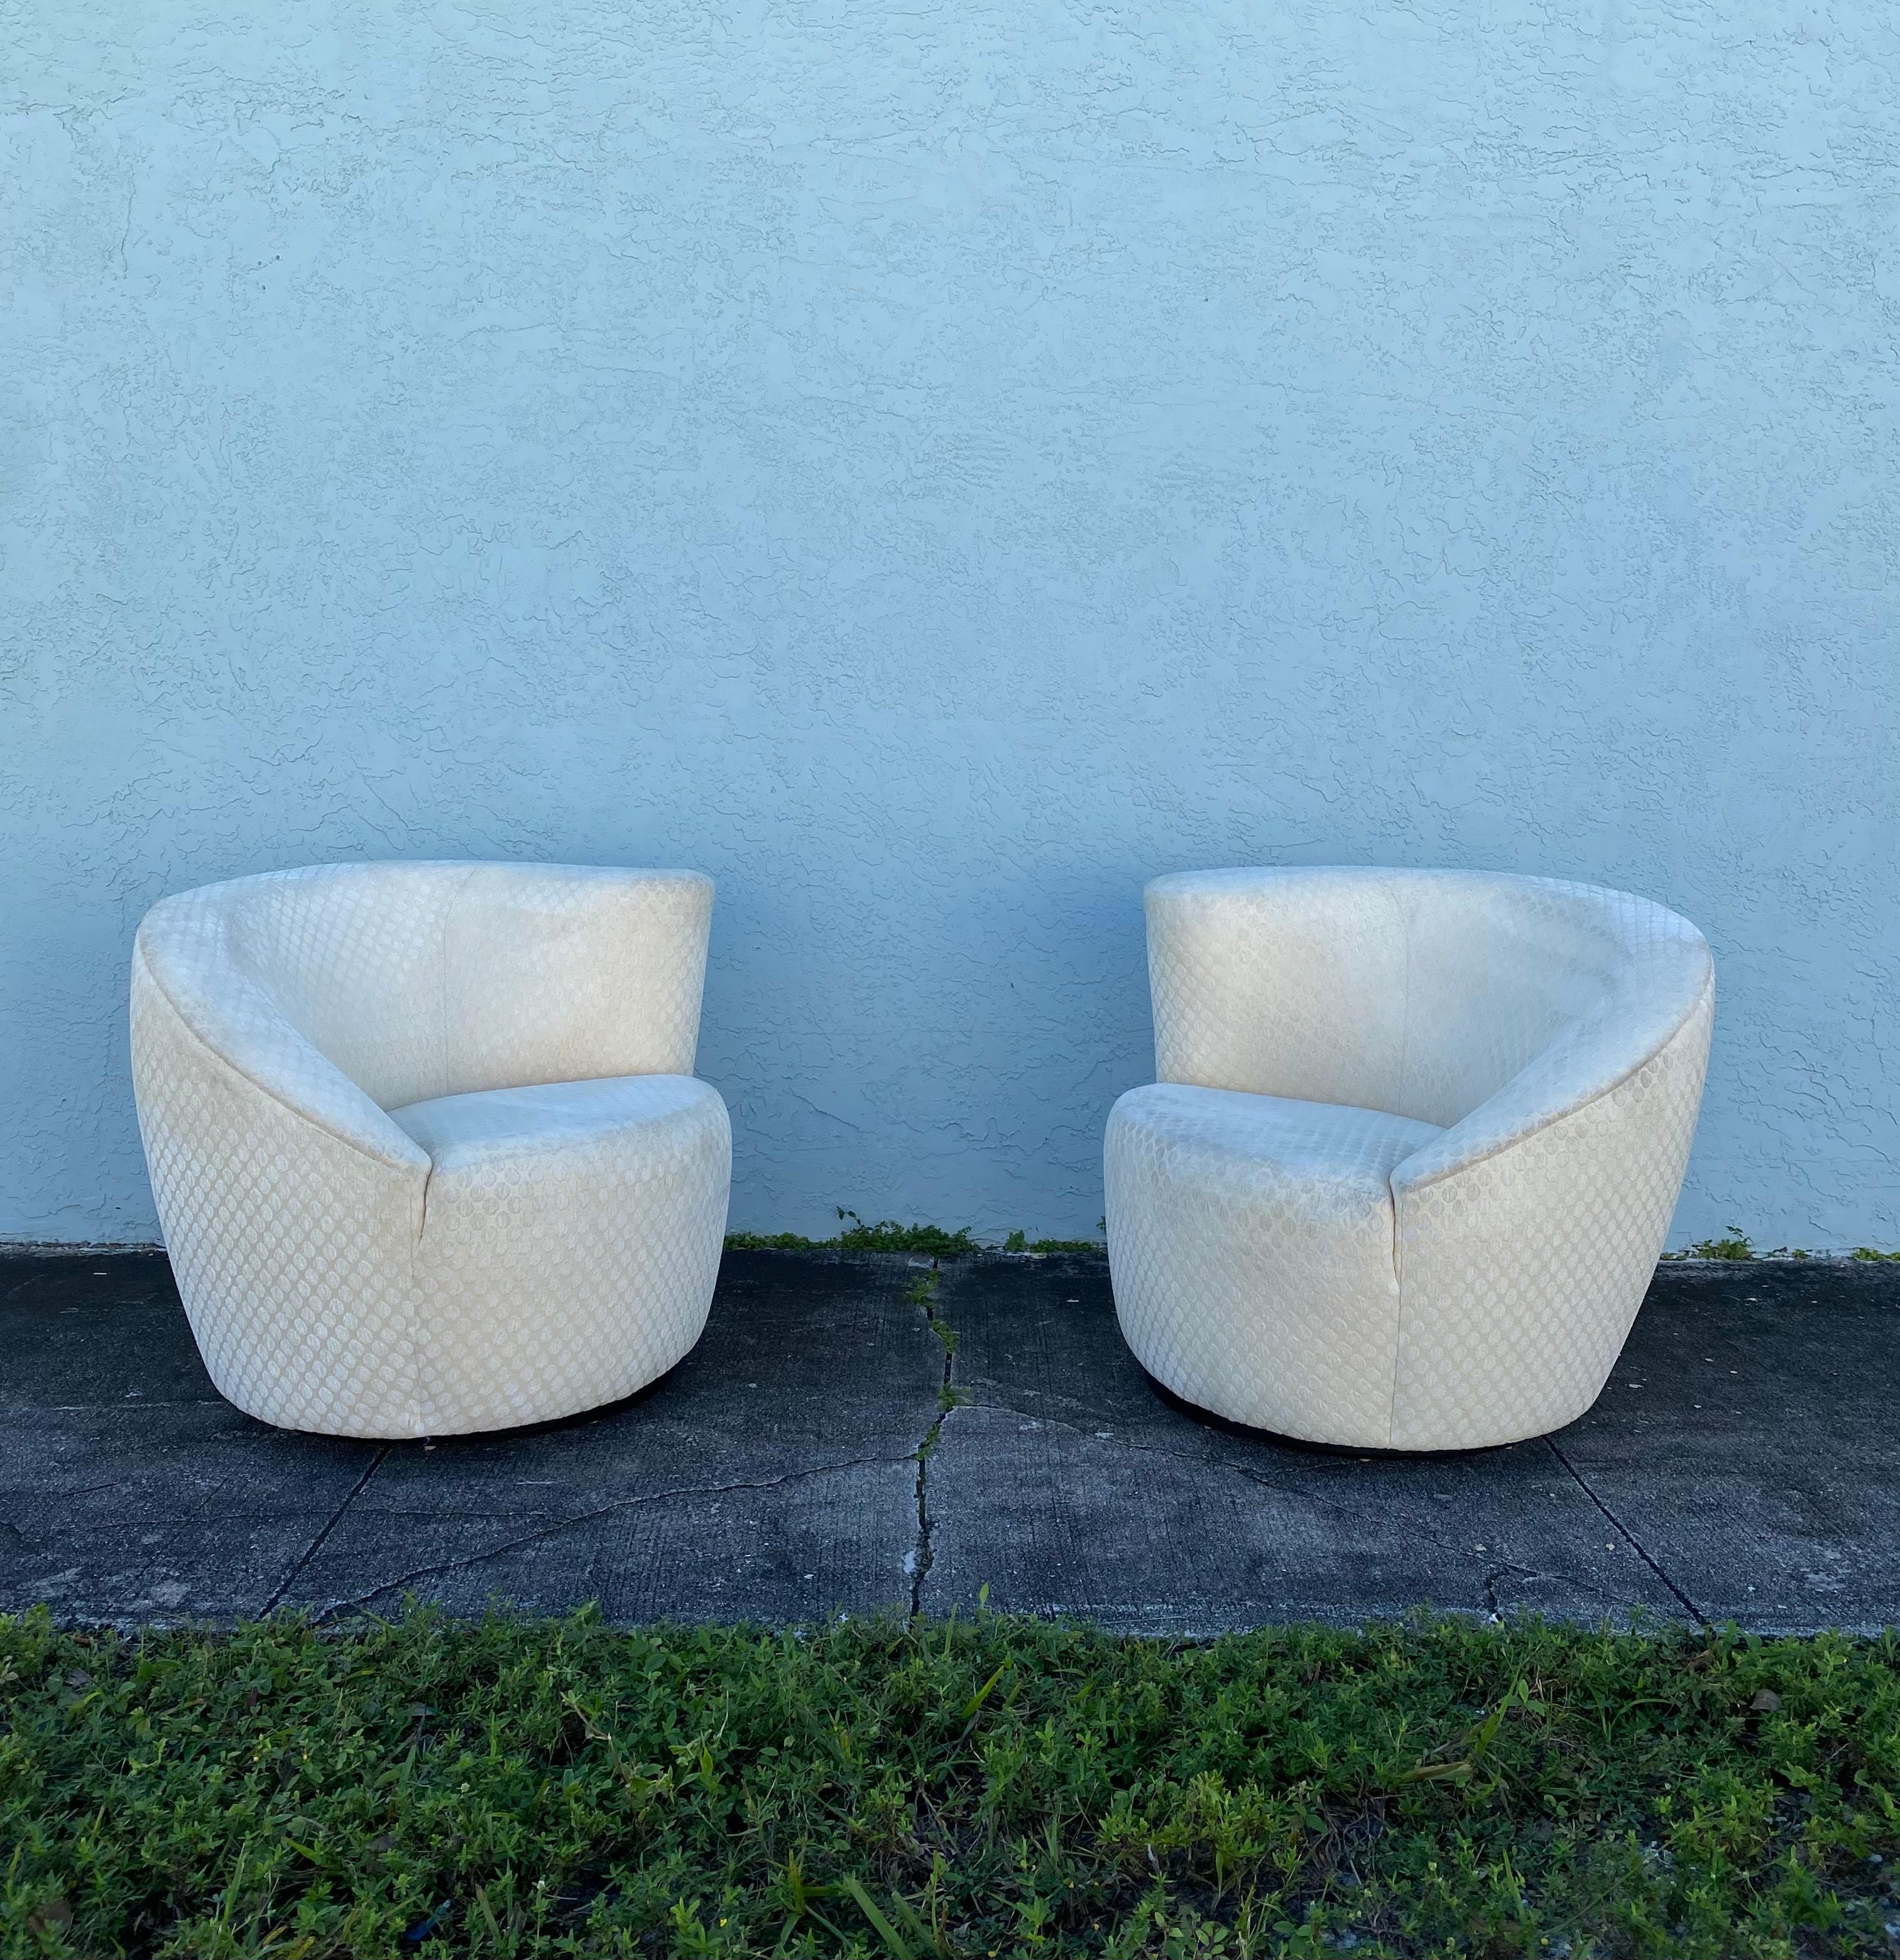 Nous vous proposons ici l'un des plus beaux ensembles de chaises pivotantes que vous puissiez espérer trouver. Le design est remarquable partout. Ce magnifique ensemble est une pièce d'apparat qui est également extrêmement confortable et pleine de